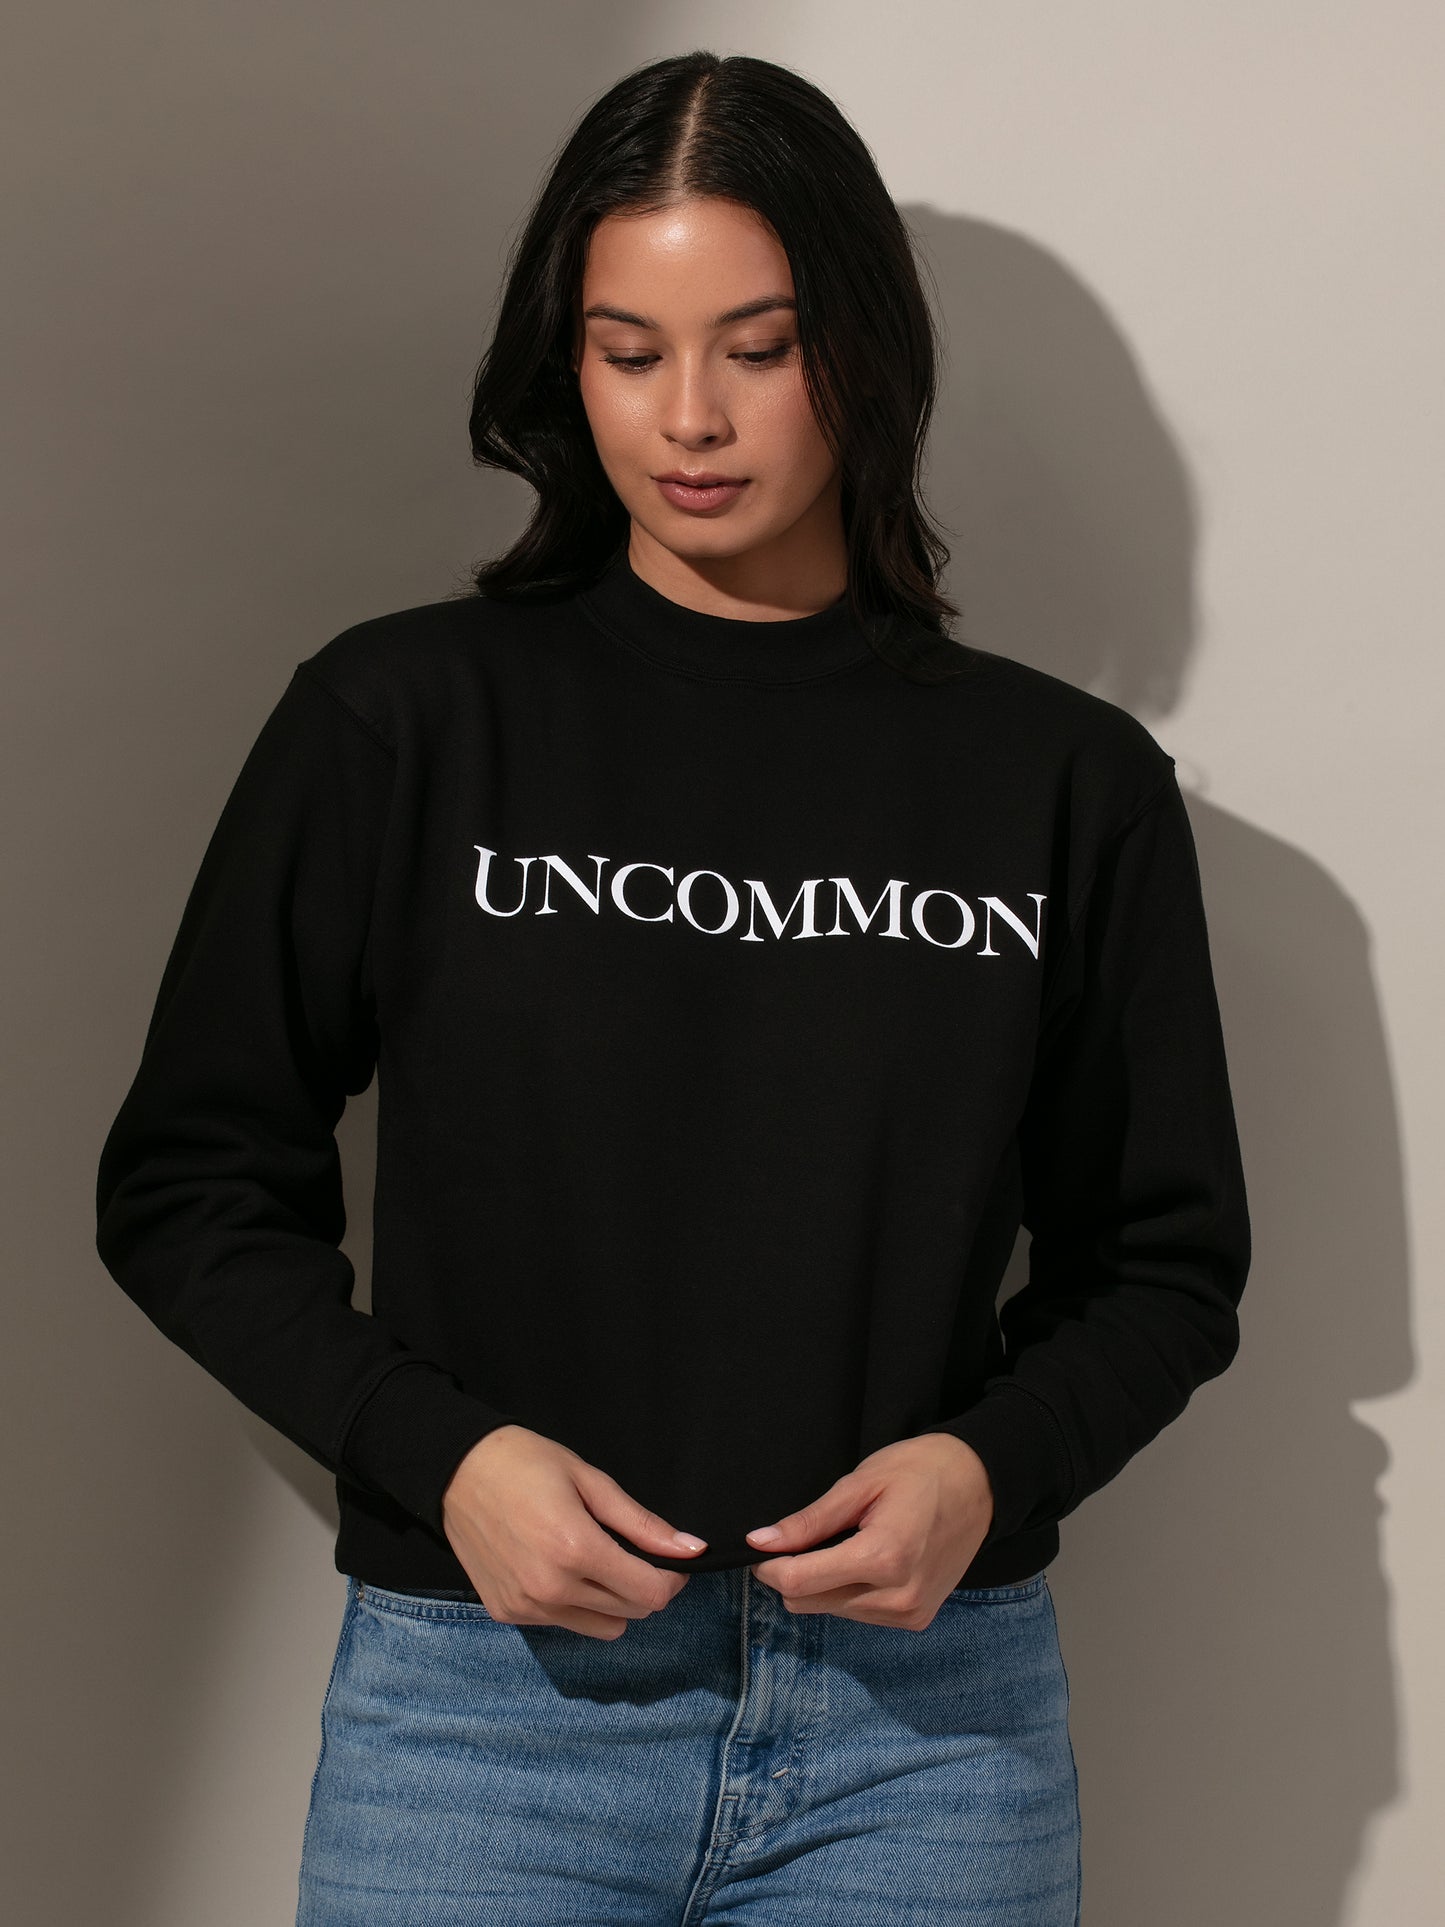 Uncommon Sweatshirt | Black | Model Image 2 | Uncommon James